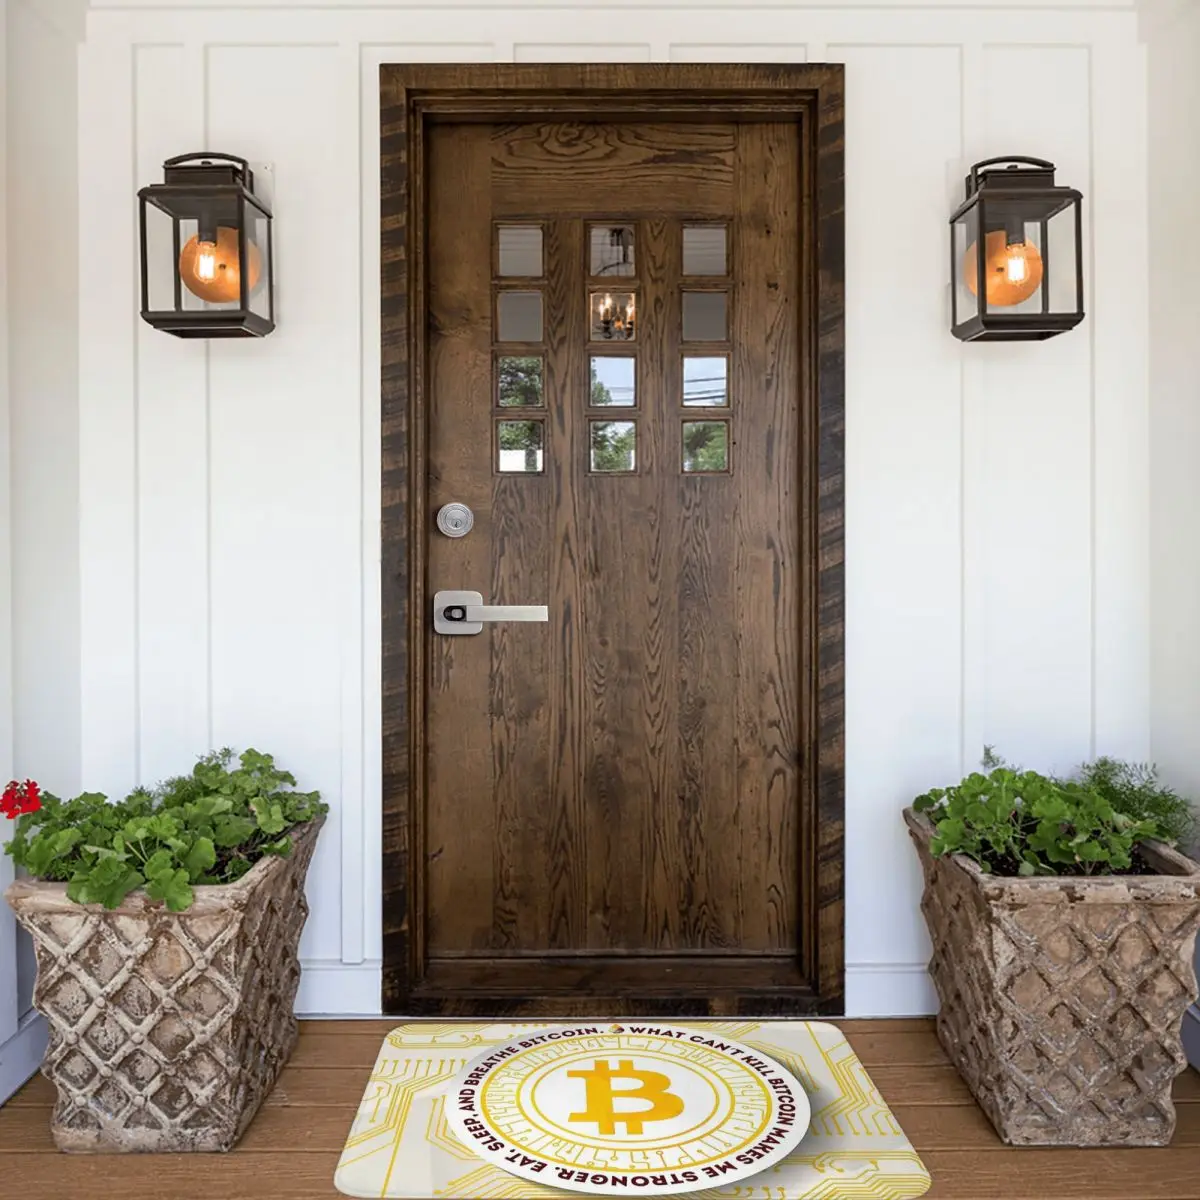 Bitcoin Virtual Currency Anti-Slip Doormat Kitchen Mat Eat Sleep Floor Carpet Entrance Door Rug Home Decor images - 6